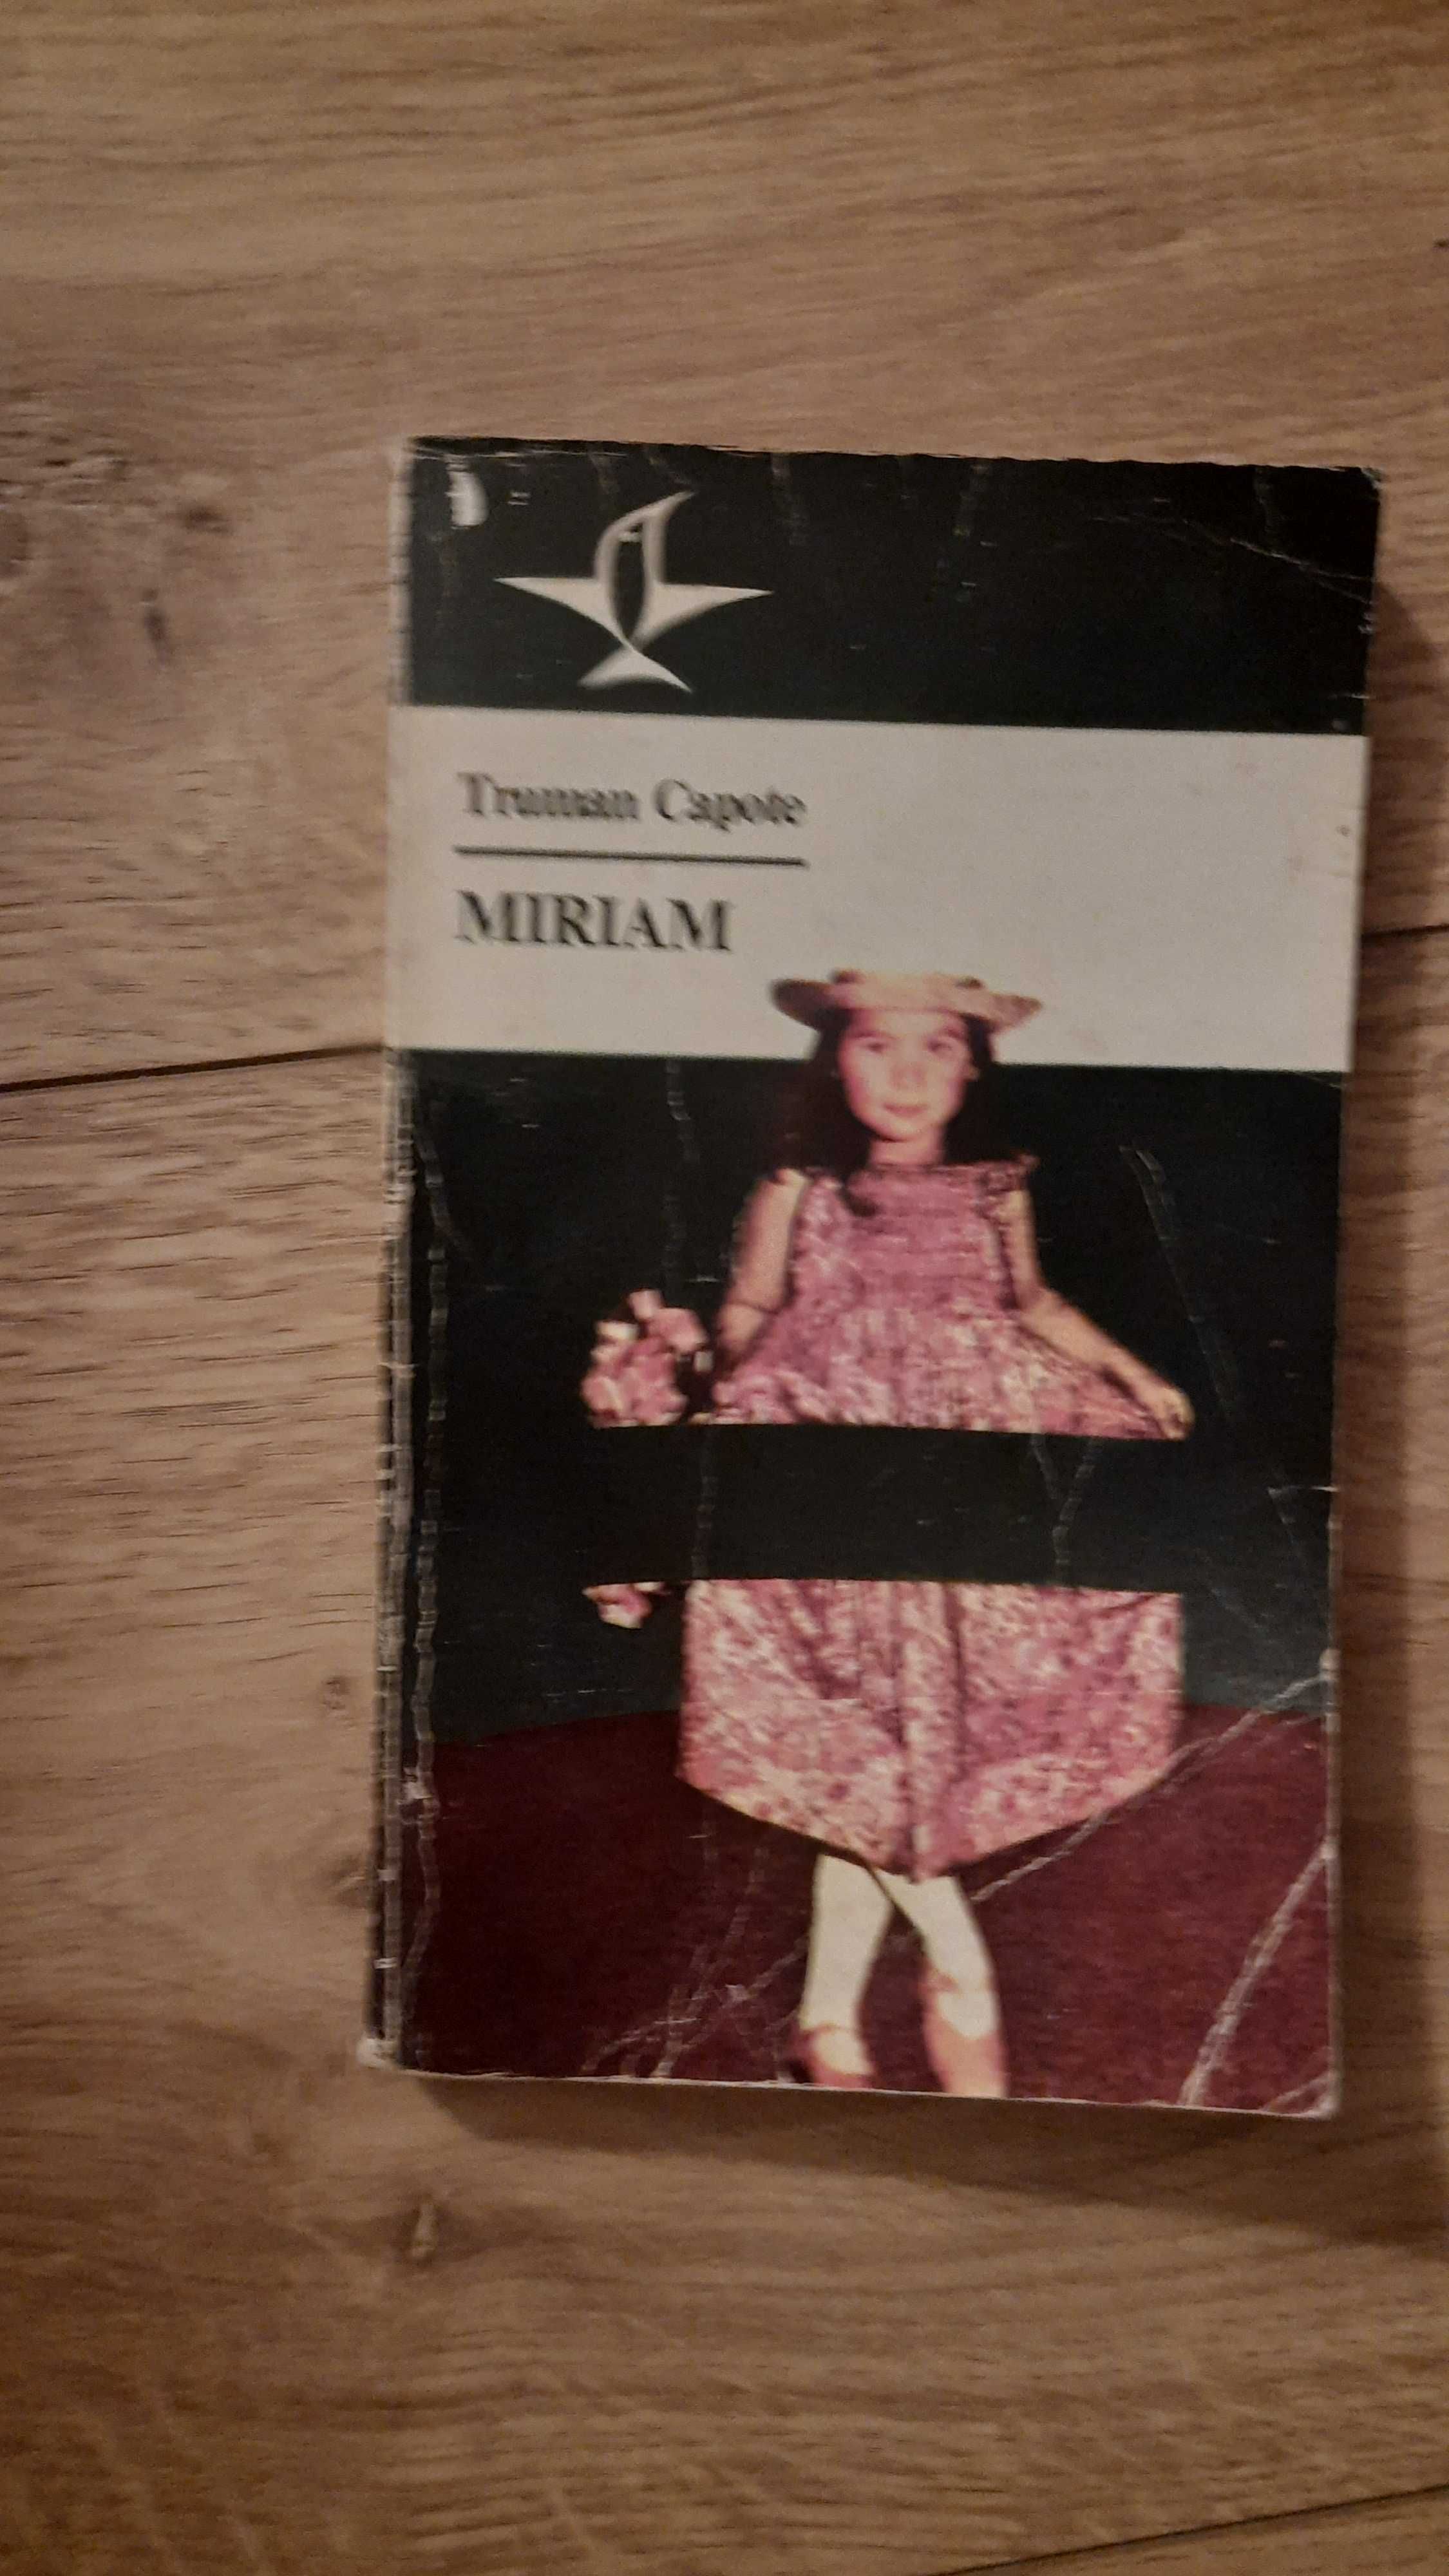 Truman Capote - Miriam